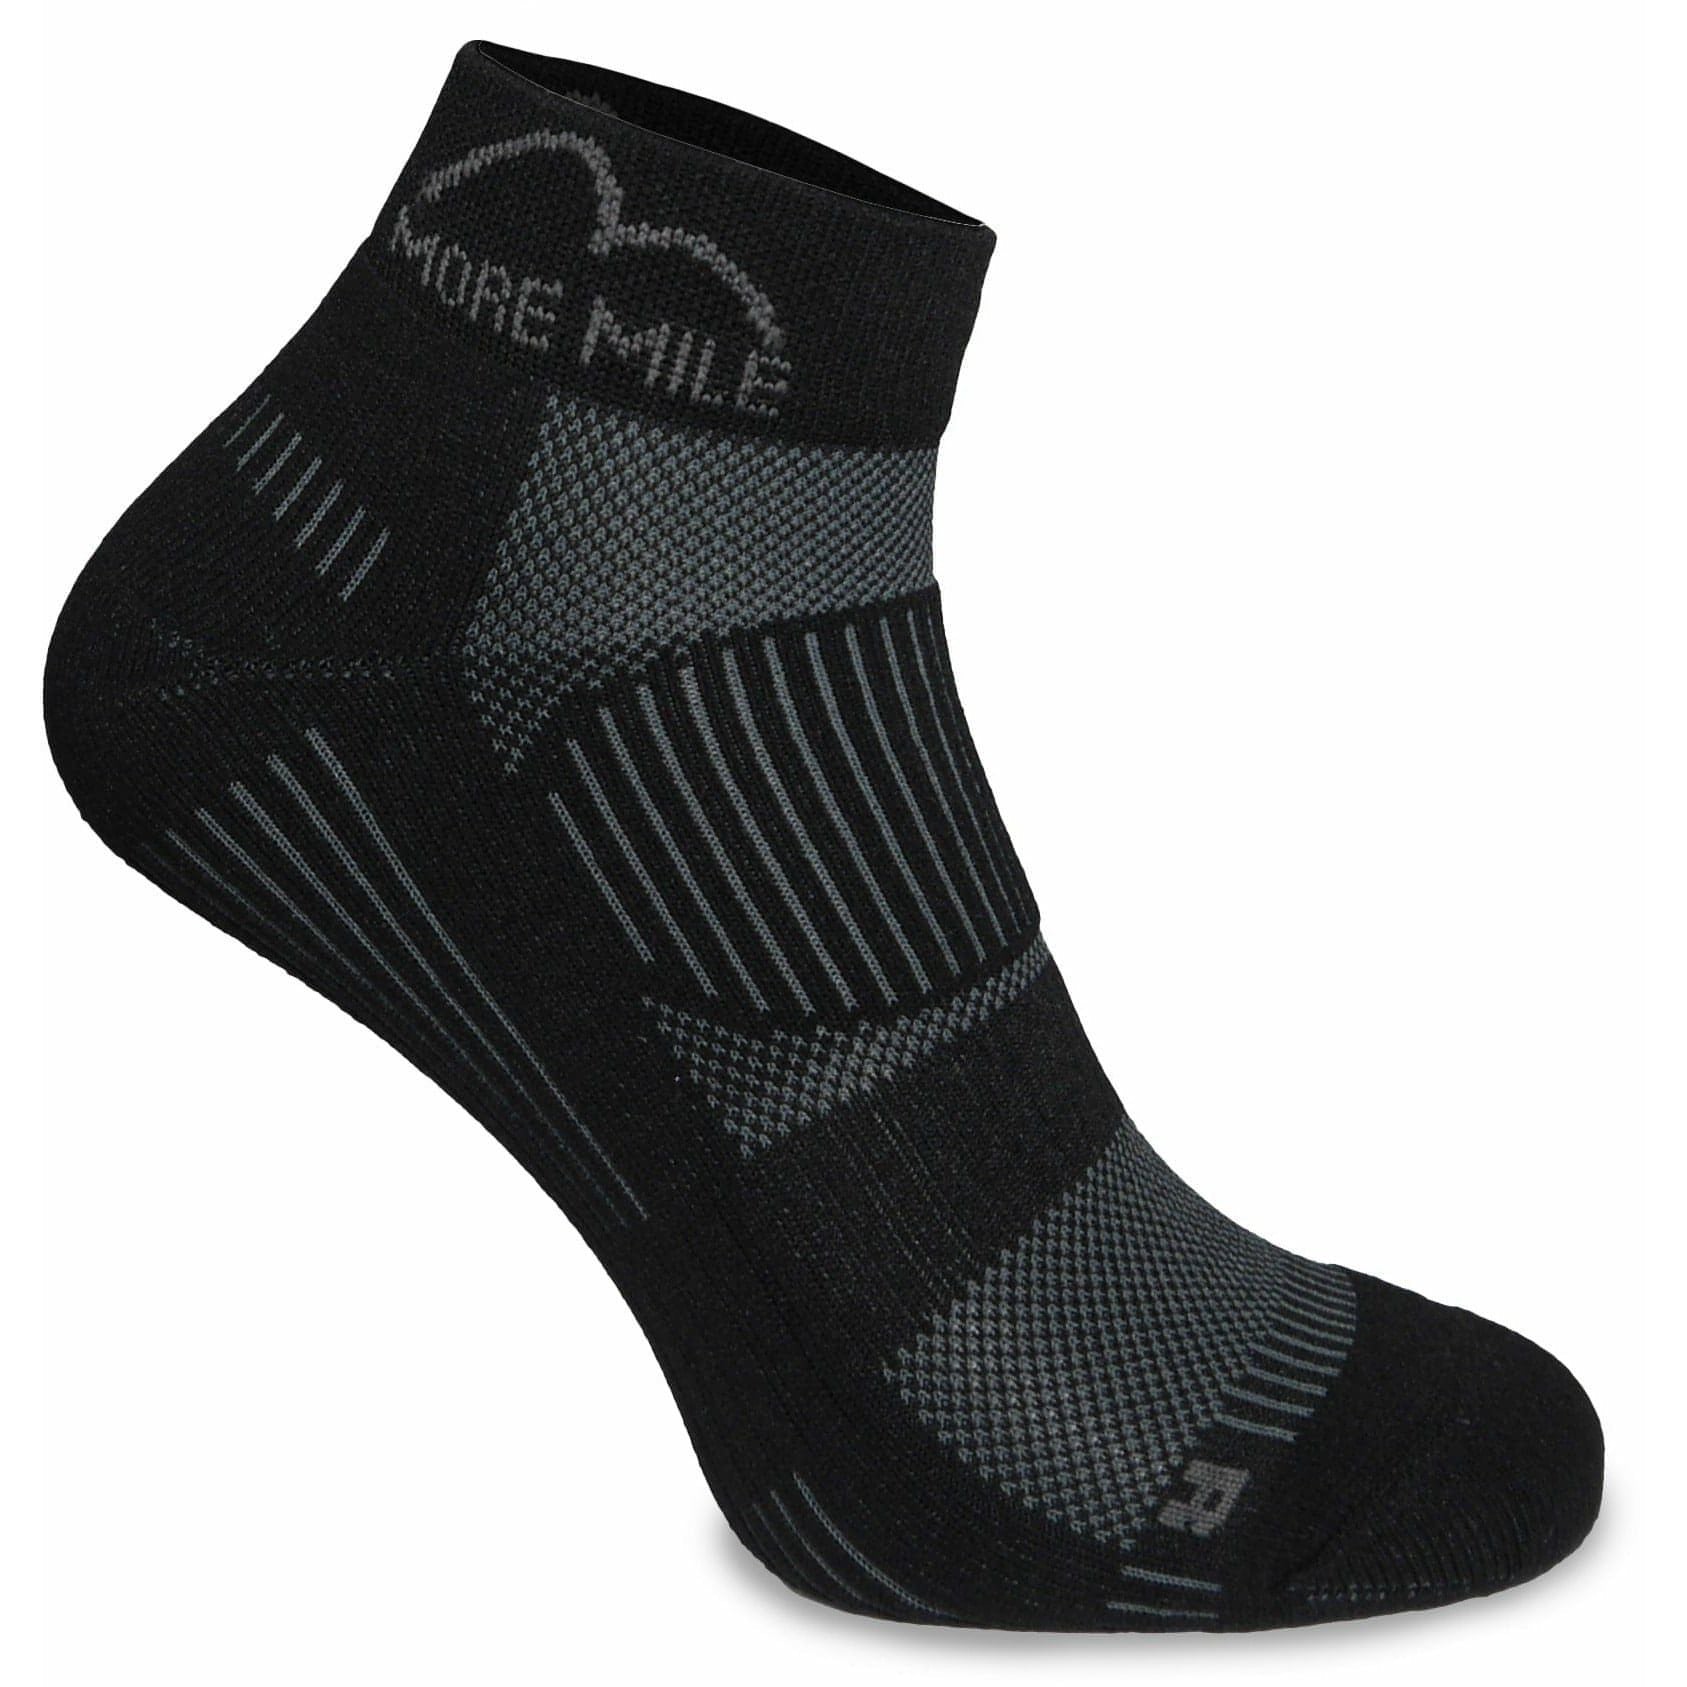 More Mile London 2.0 Eco Friendly Running Socks - Black - Start Fitness